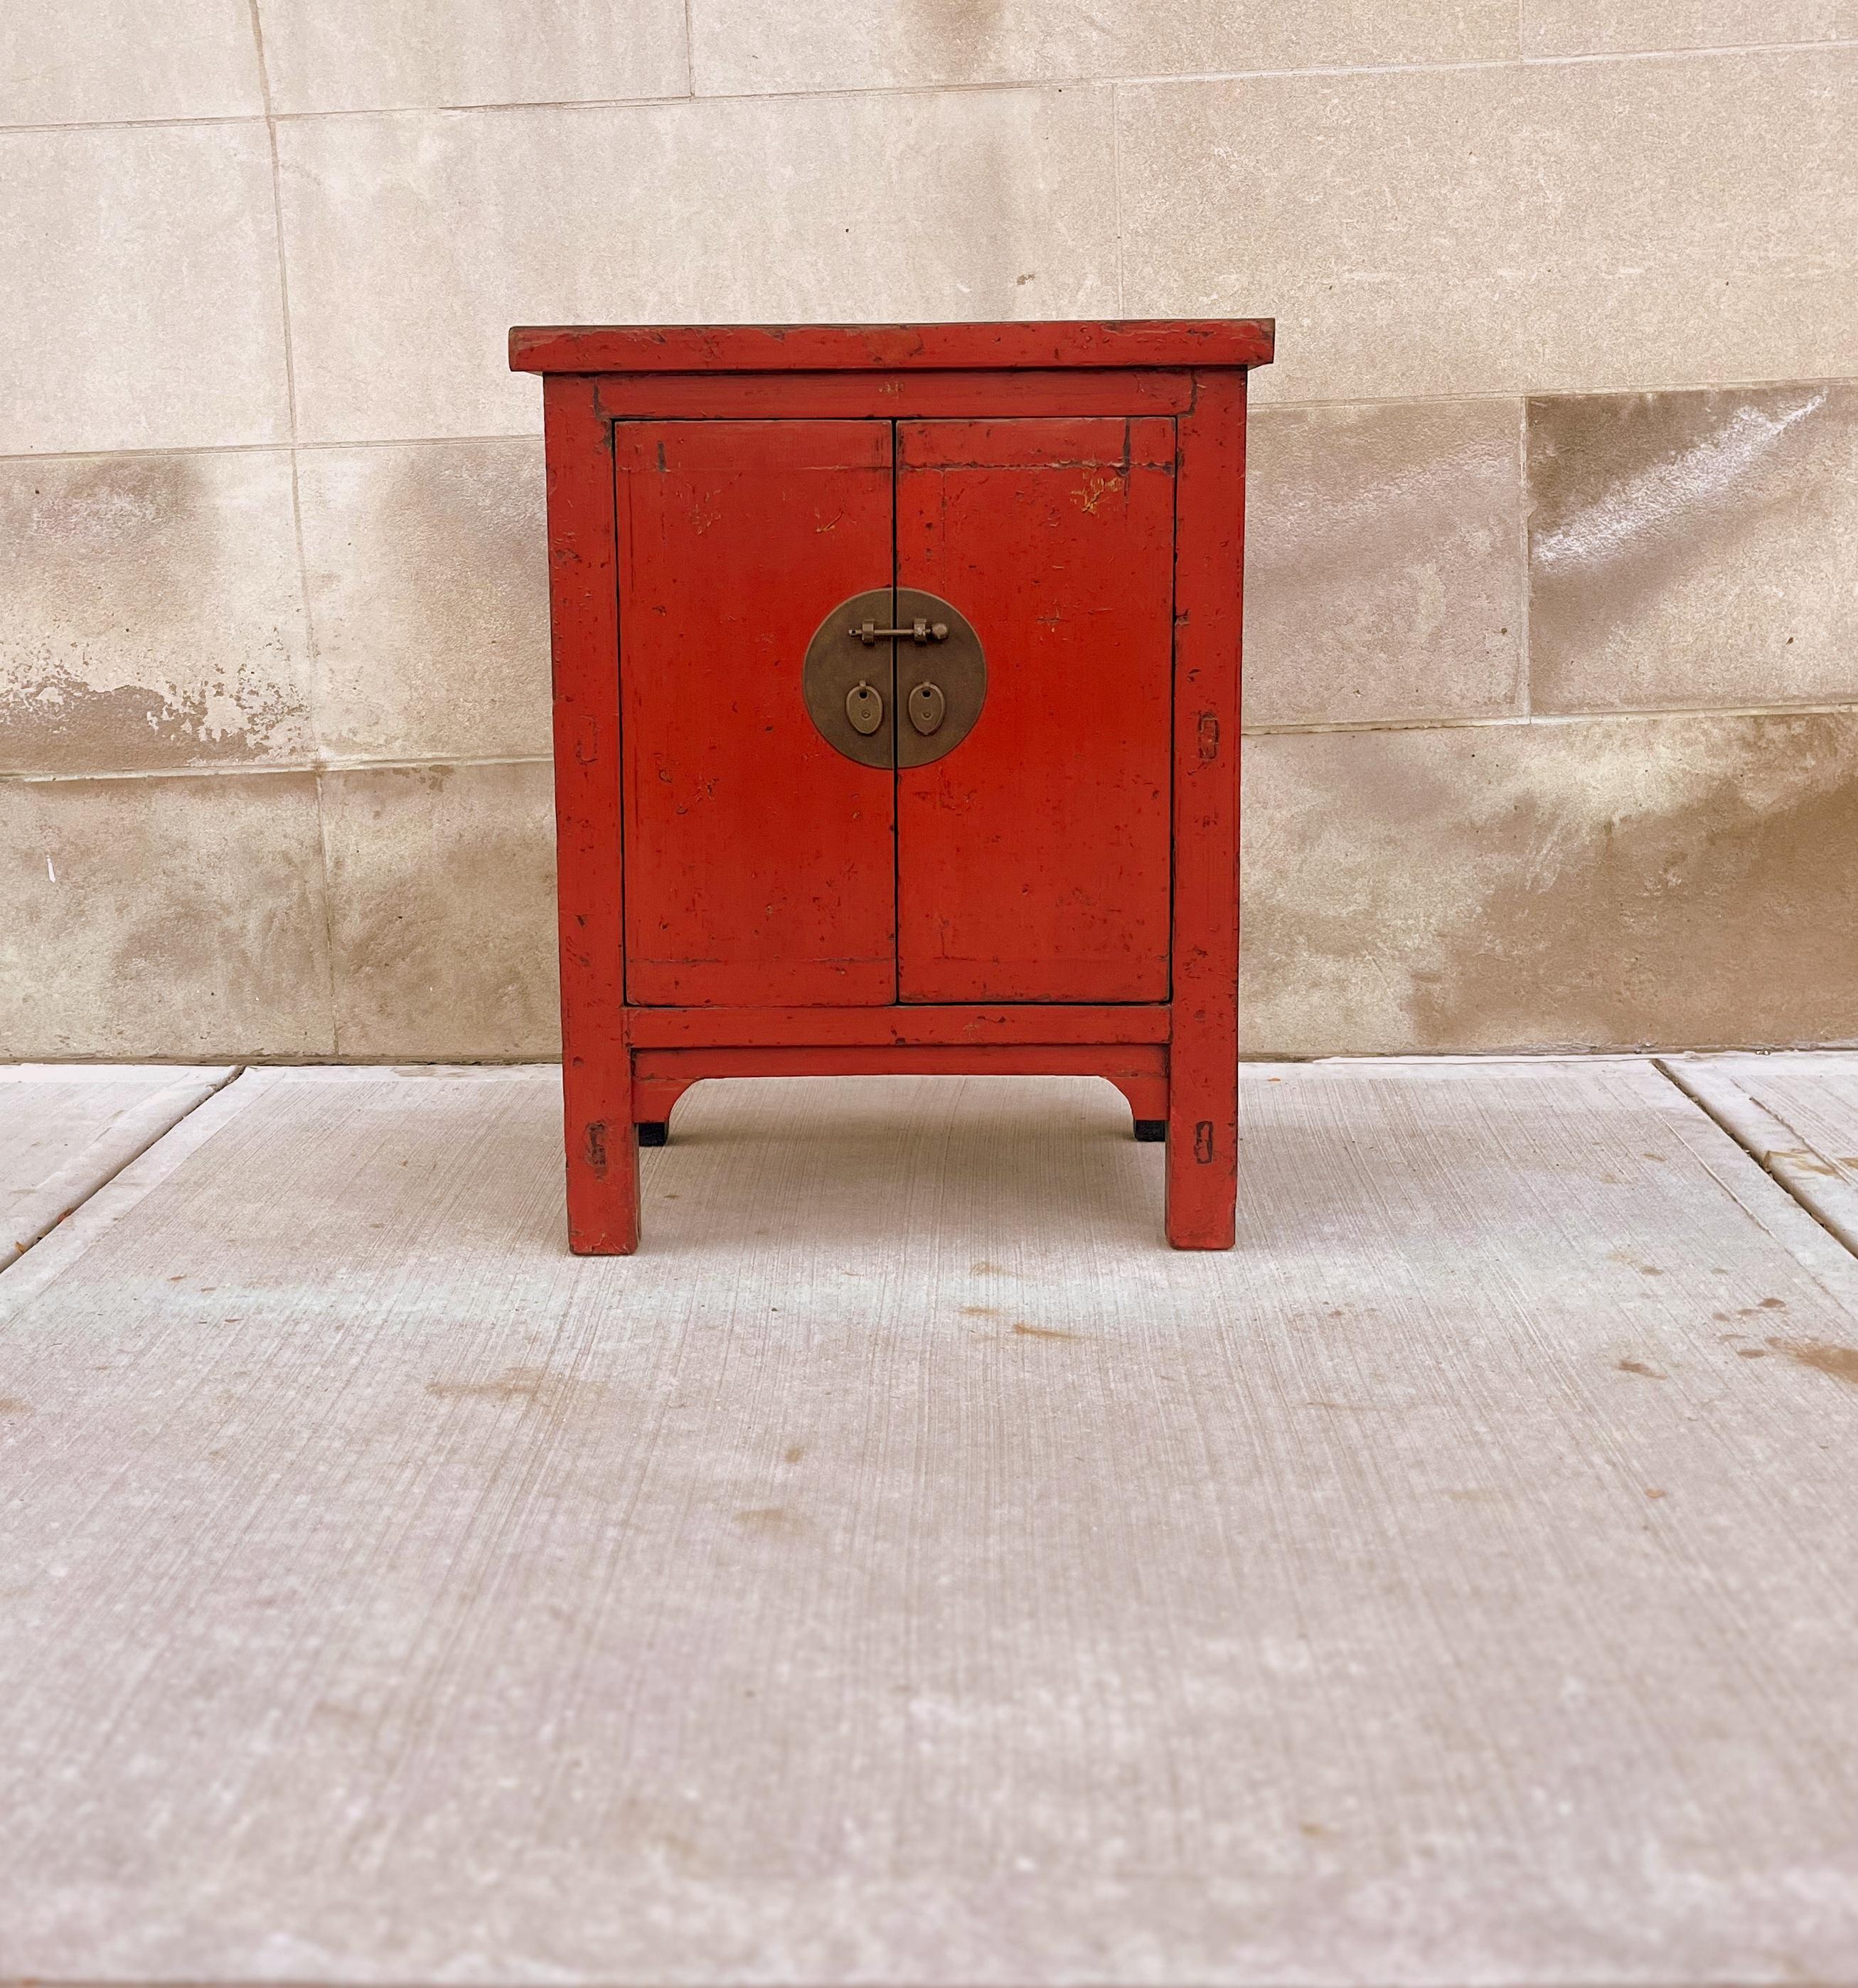 Antike rote Lacktruhe mit zwei offenen Türen und einem herausnehmbaren Regal im Inneren.